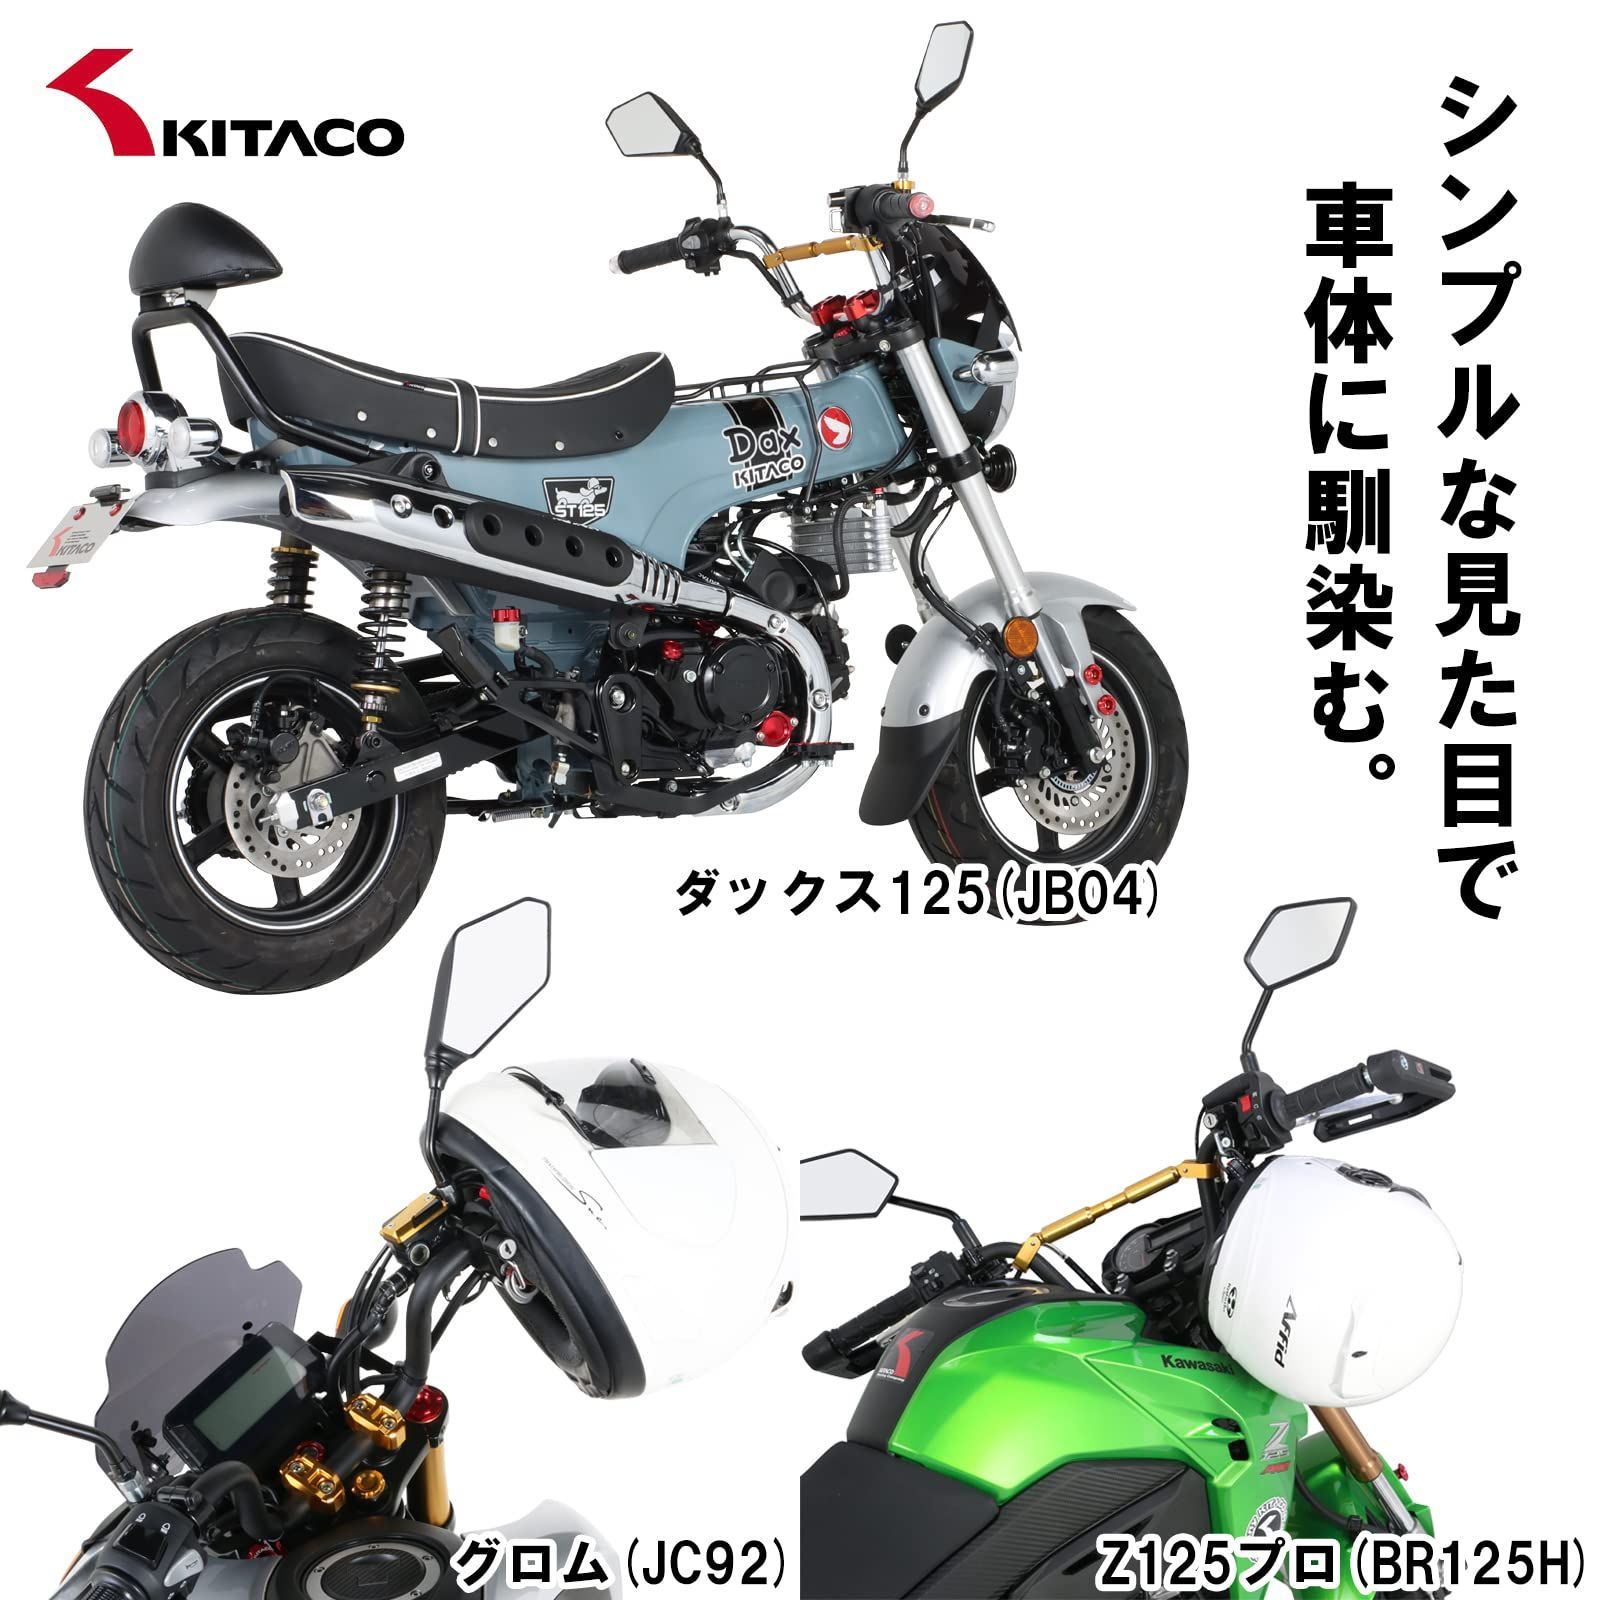 キタコ - 80-564-90050 ヘルメットホルダー(ブラック/ブラック) KITACO